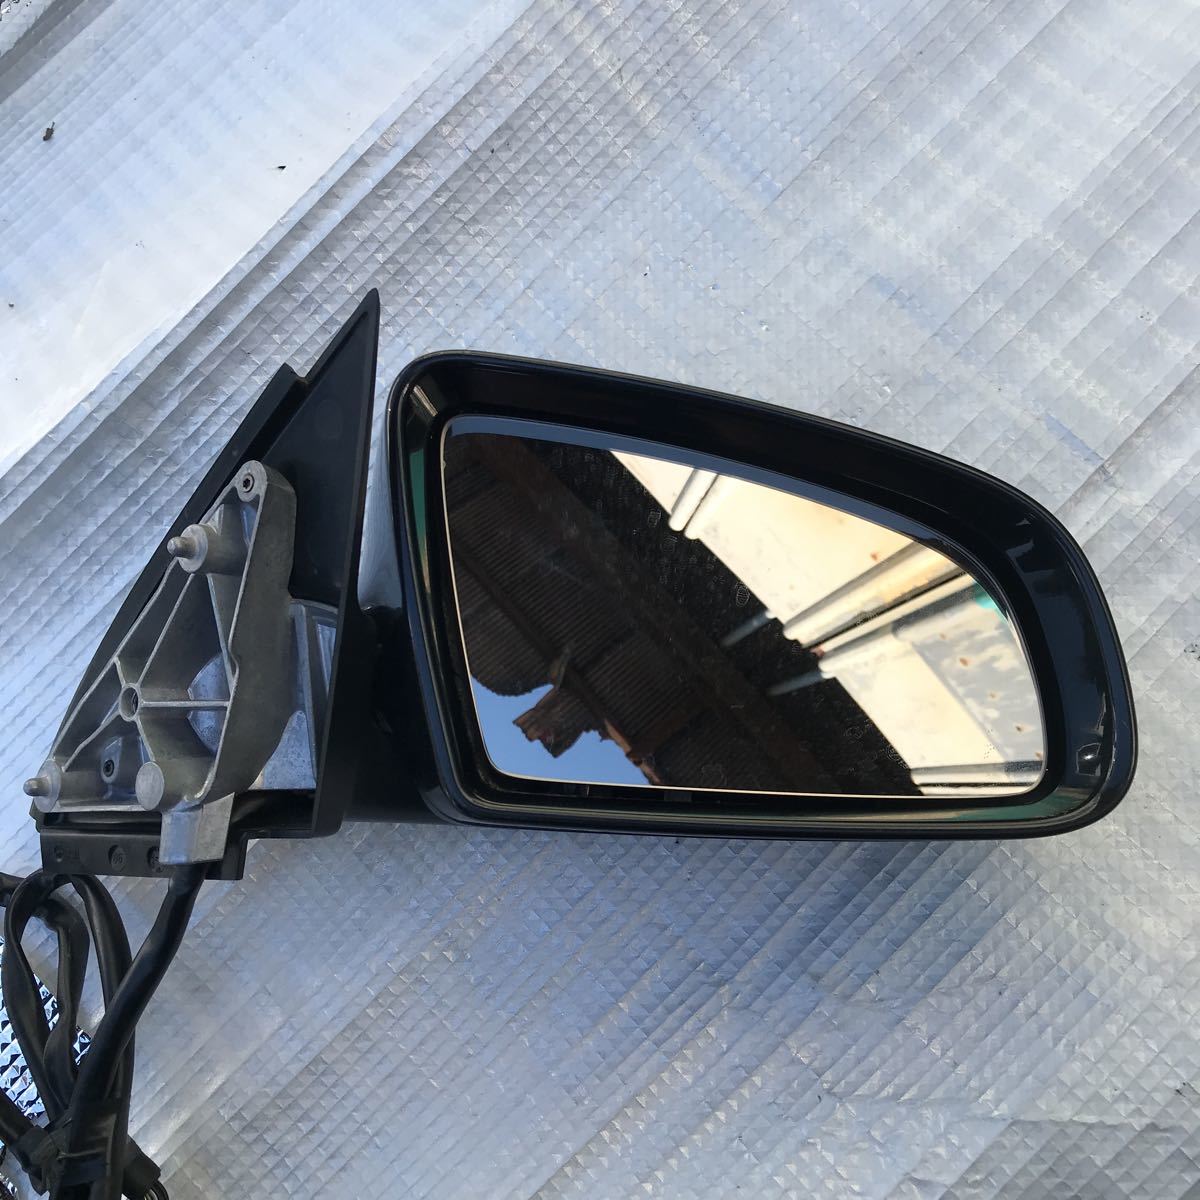  Audi 8EALT A4 правое наружное зеркало рабочее состояние подтверждено быстрое решение черный 